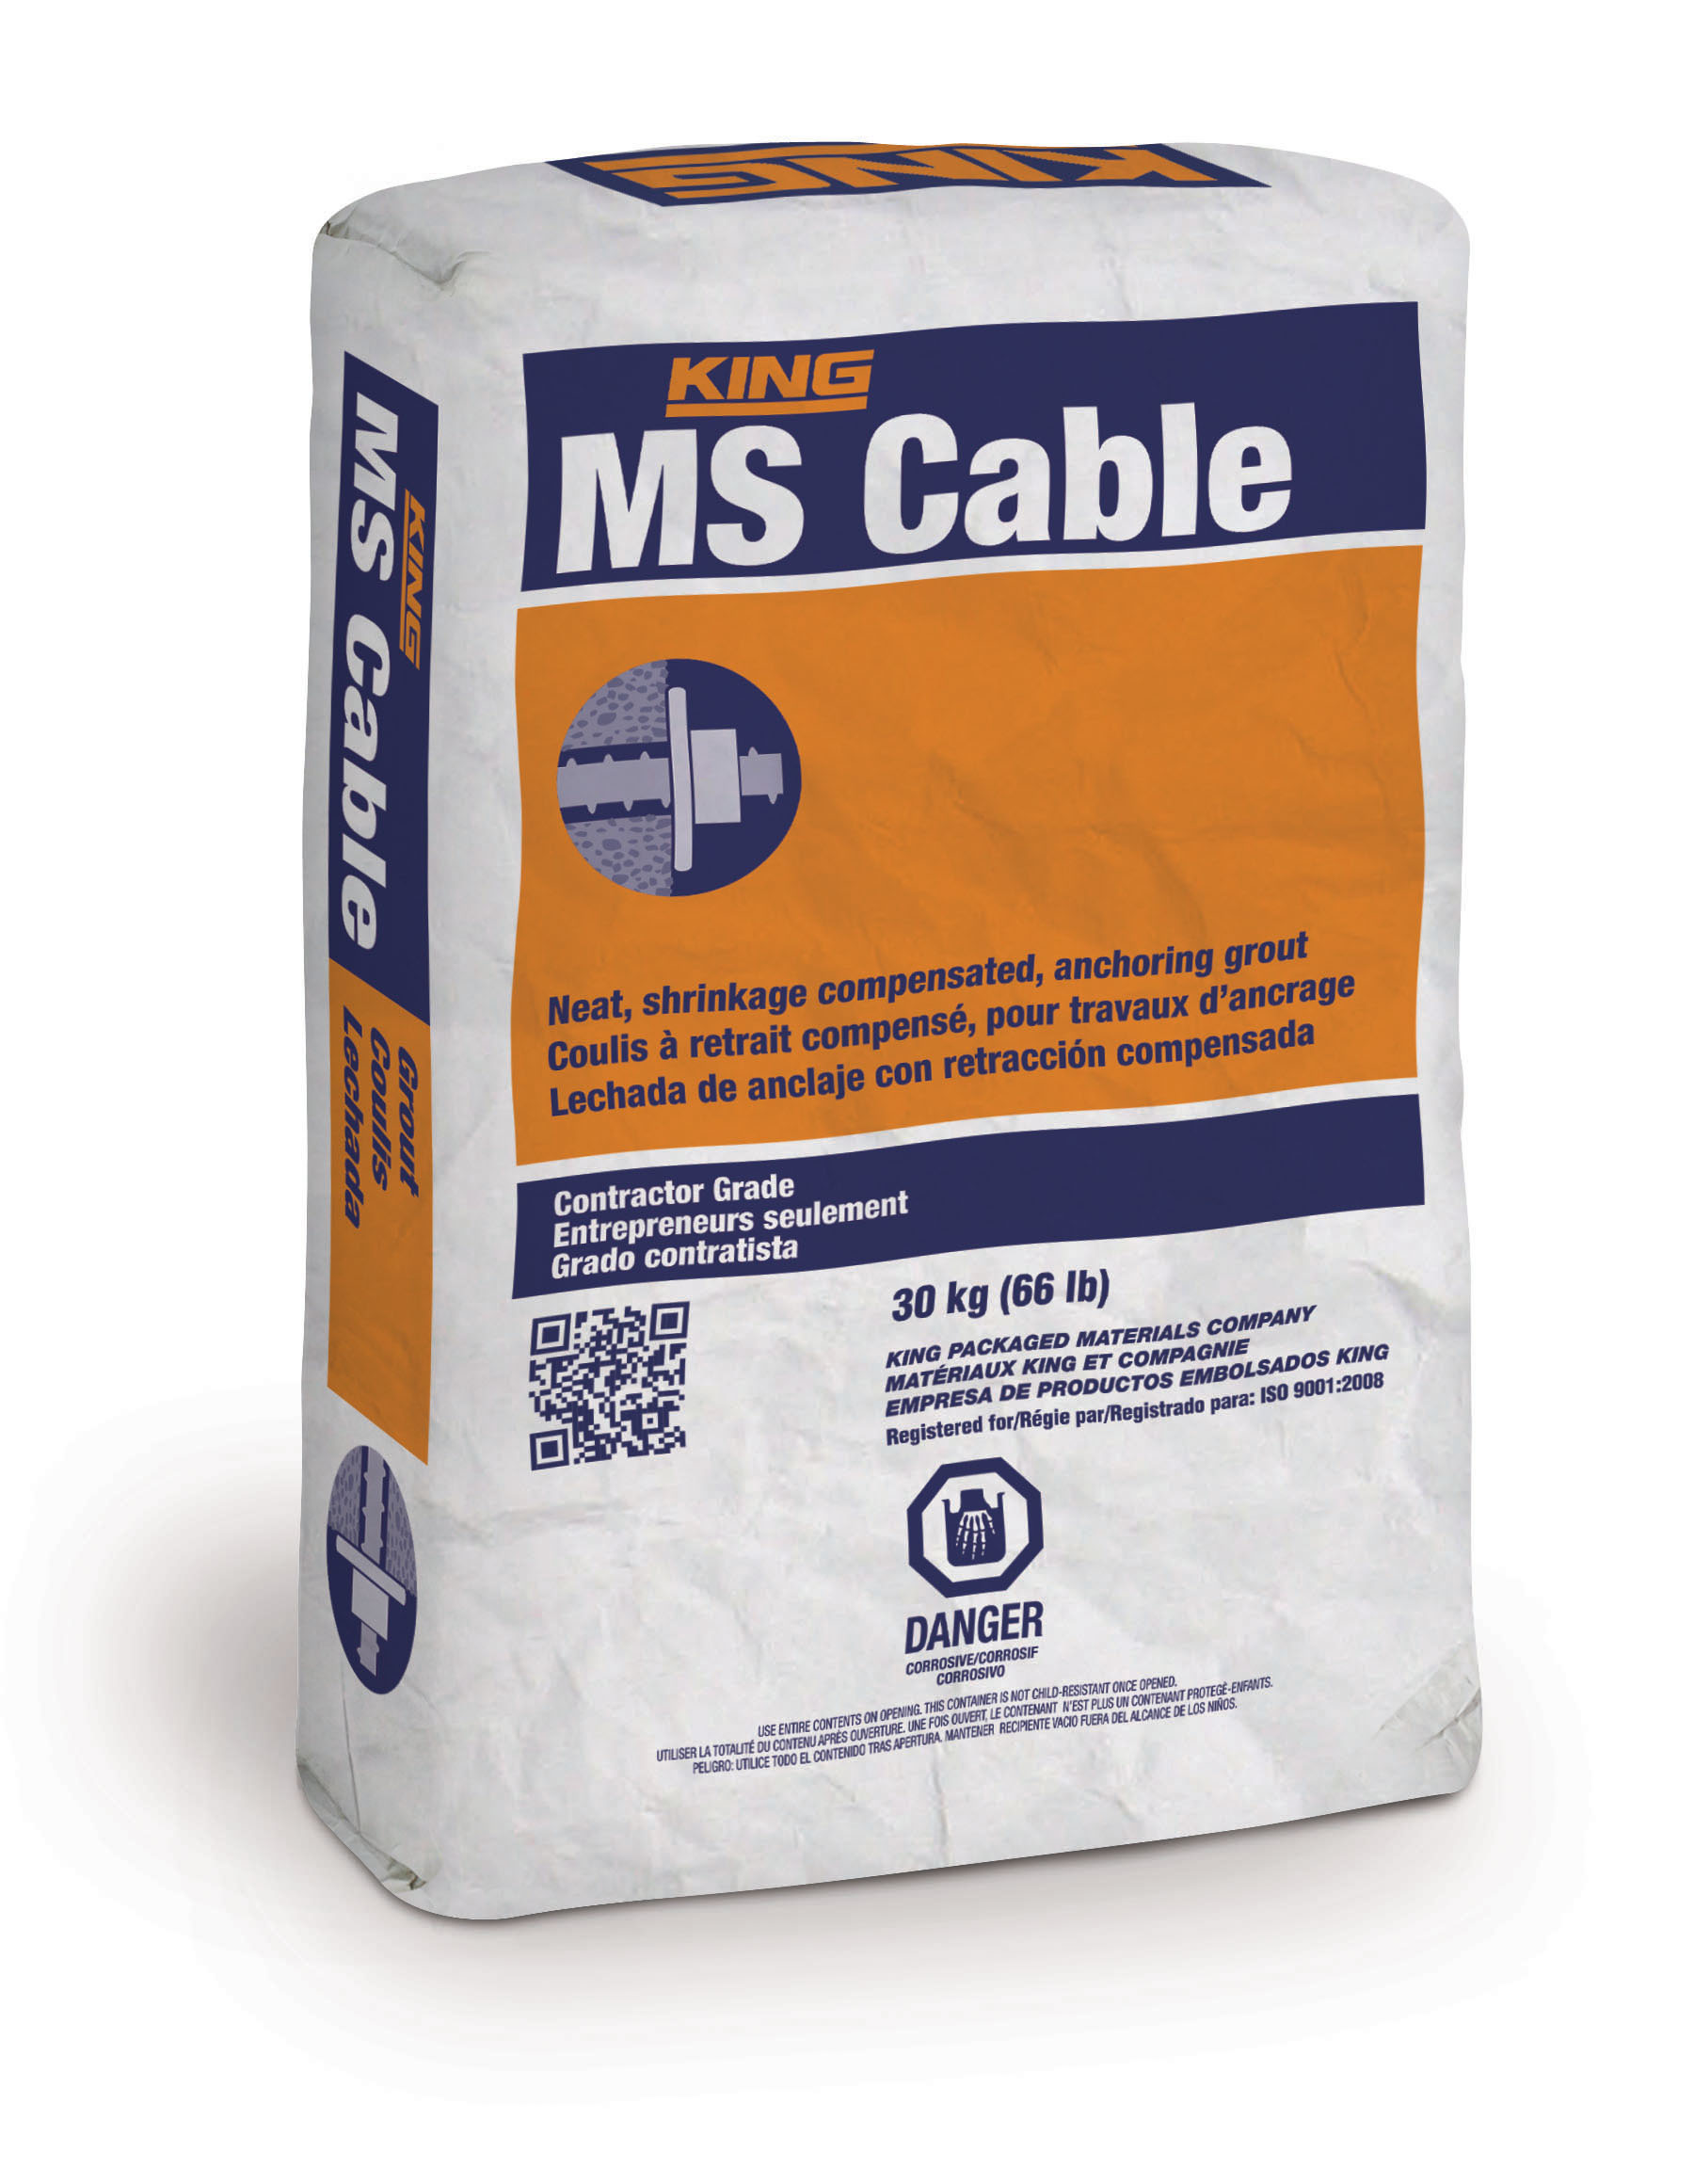 Le sac de MS Cable passera de 30 kg à 25 kg